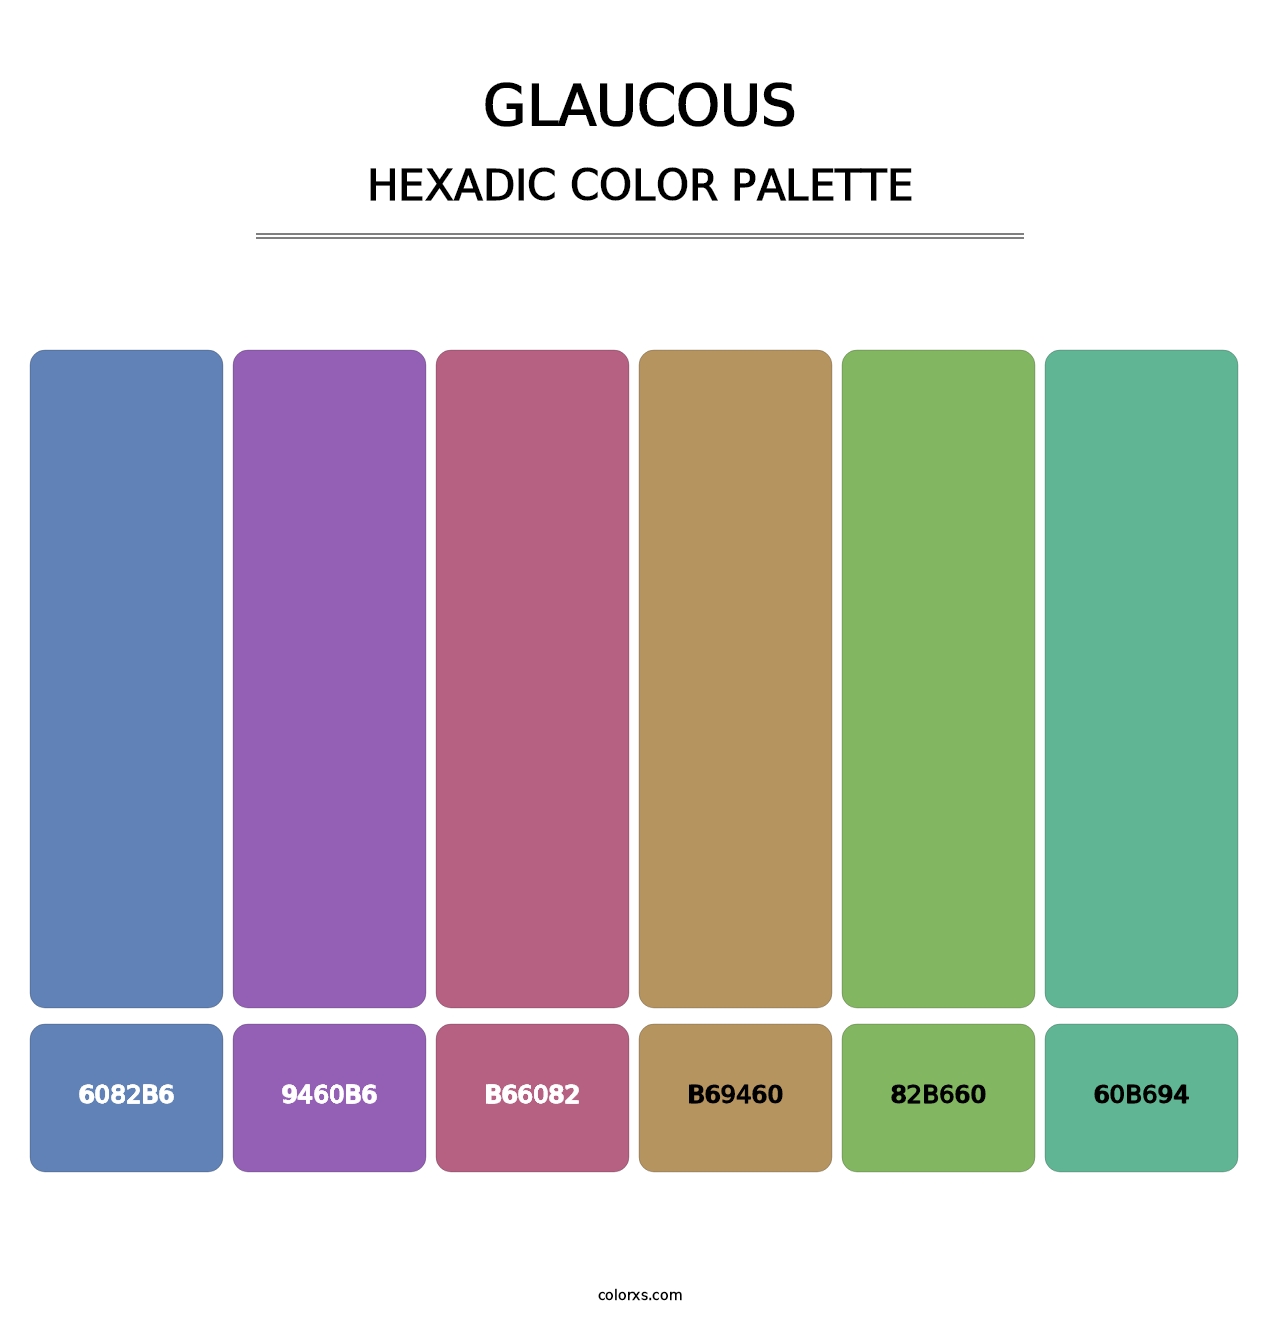 Glaucous - Hexadic Color Palette